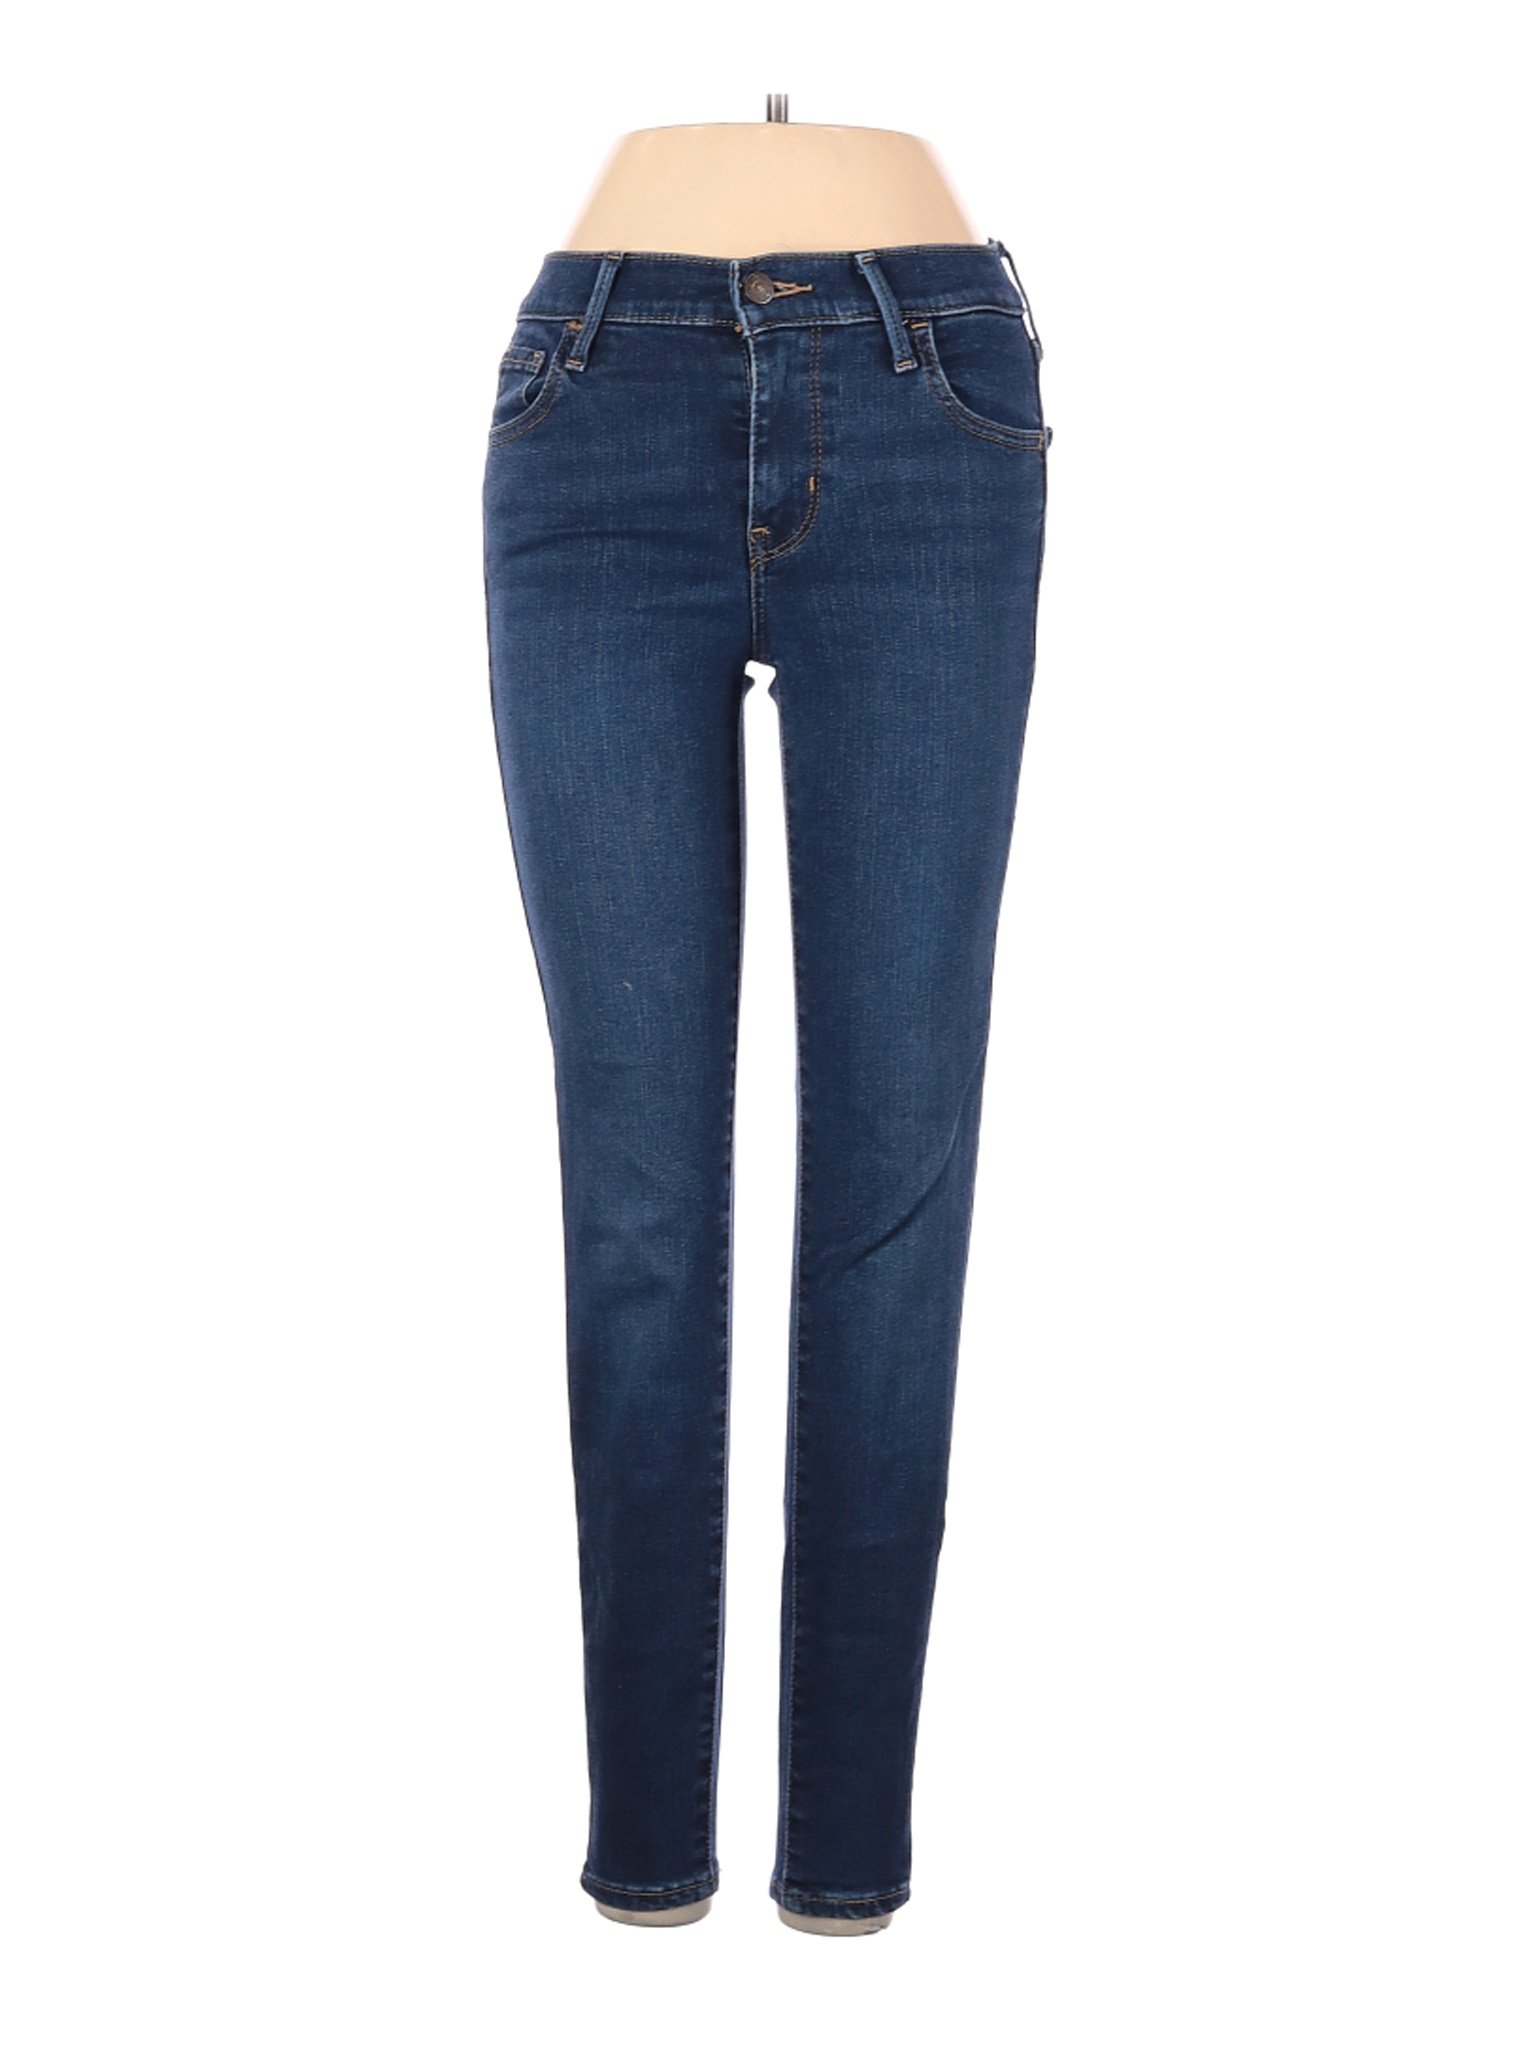 Levi's Women Blue Jeans 23W | eBay